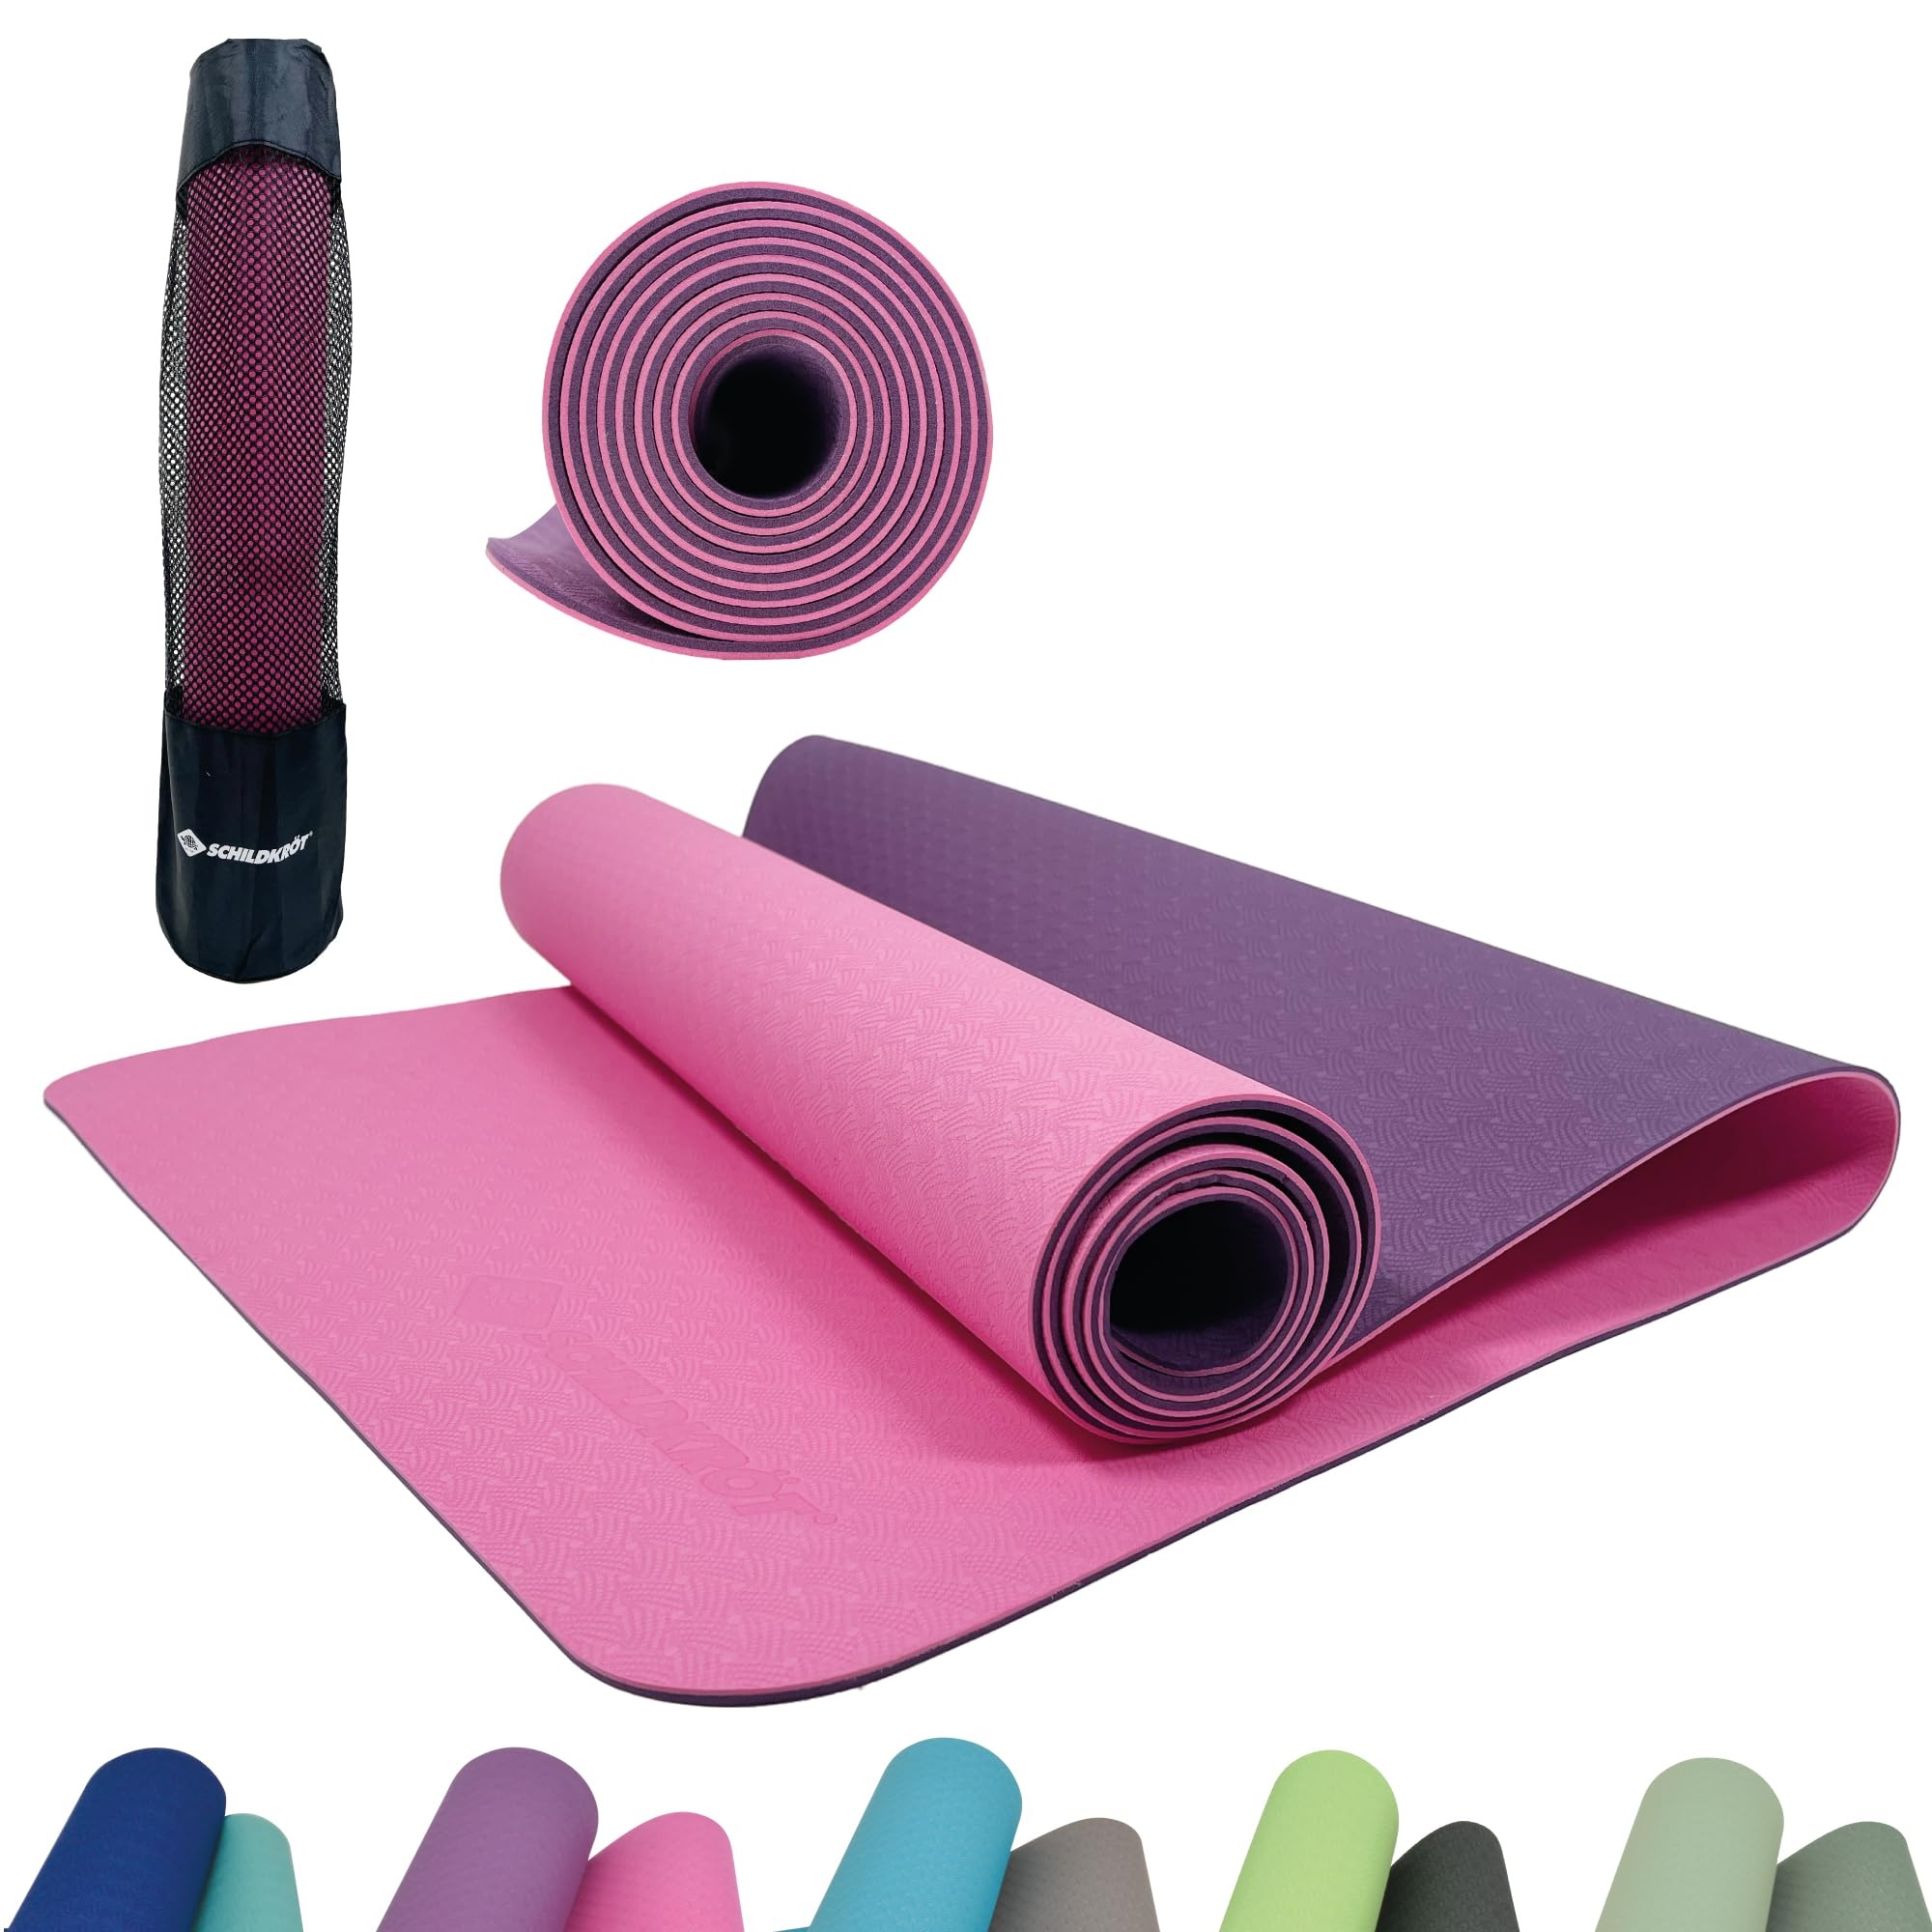 Schildkröt Fitness Yogamatte BICOLOR, PVC-freie, zweifarbige Yogamatte, wählbar, hochwertig strukturierte Oberfläche, sehr rutschfest, 180 x 61 x 0,4 cm, in Tragetasche